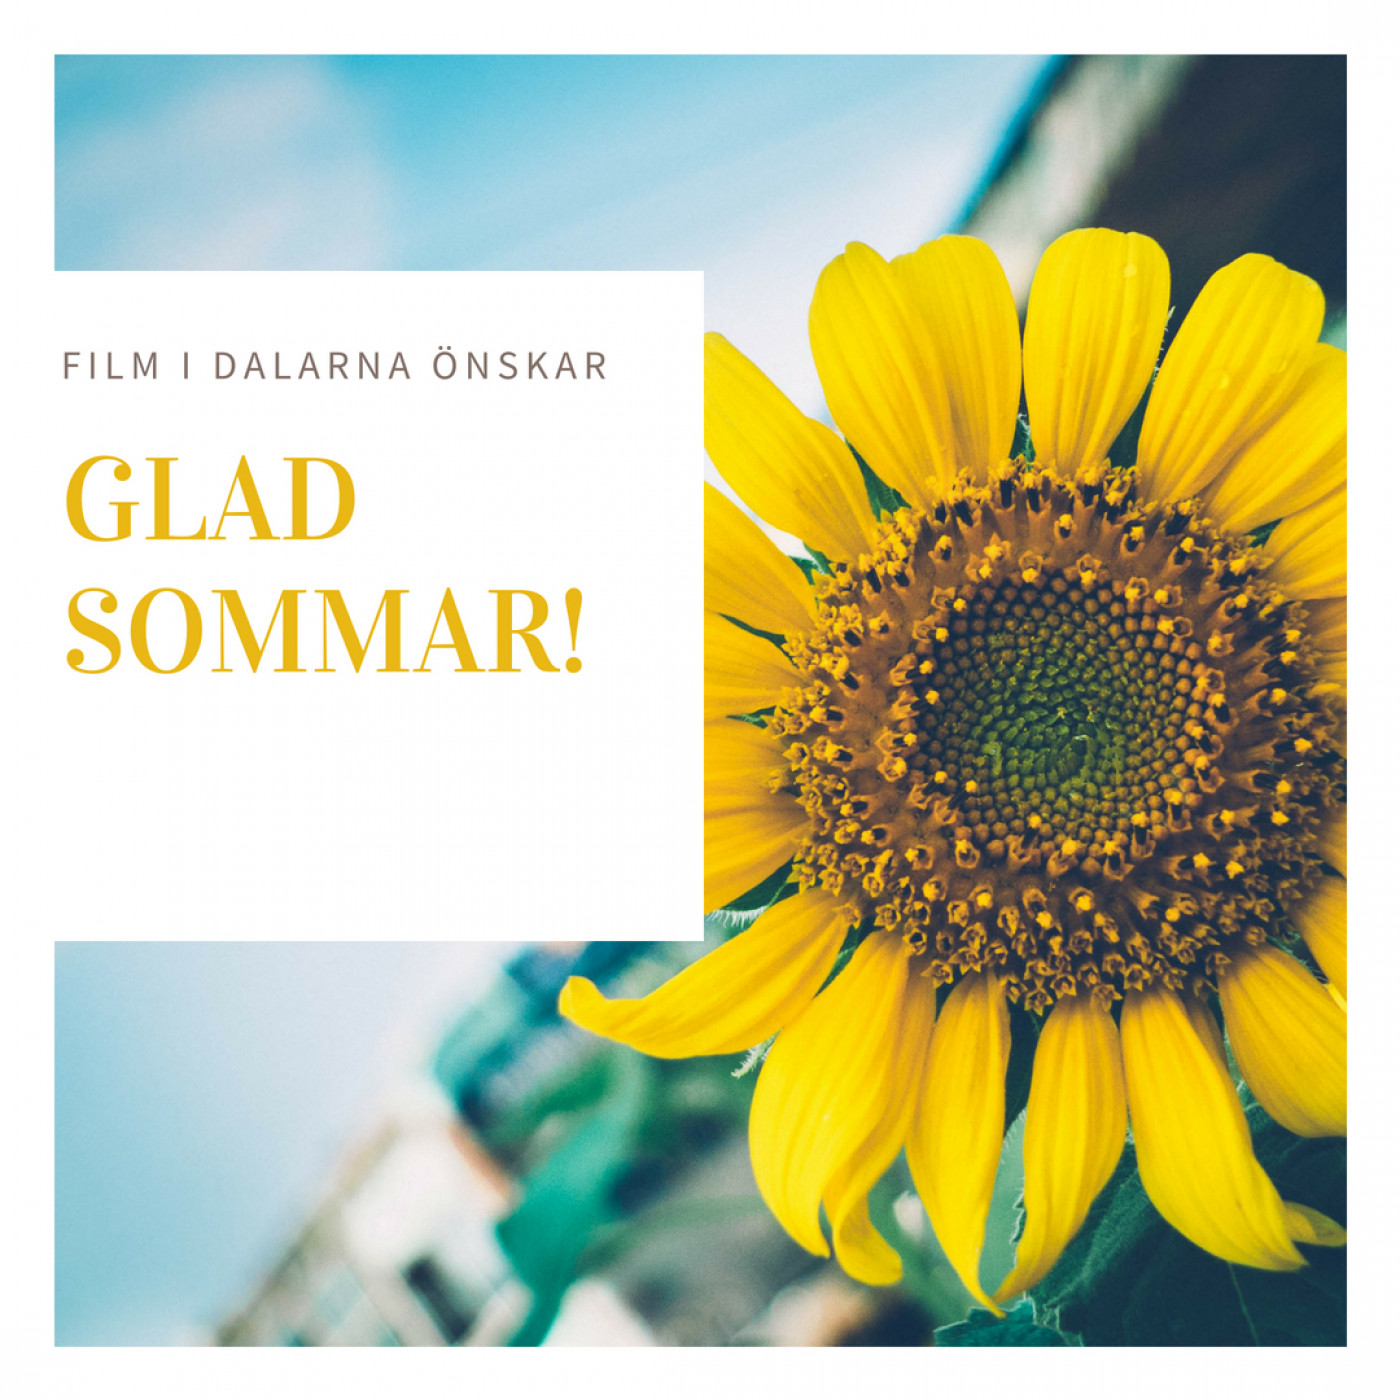 Vi önskar glad sommar till alla filmarbetare i Dalarna!